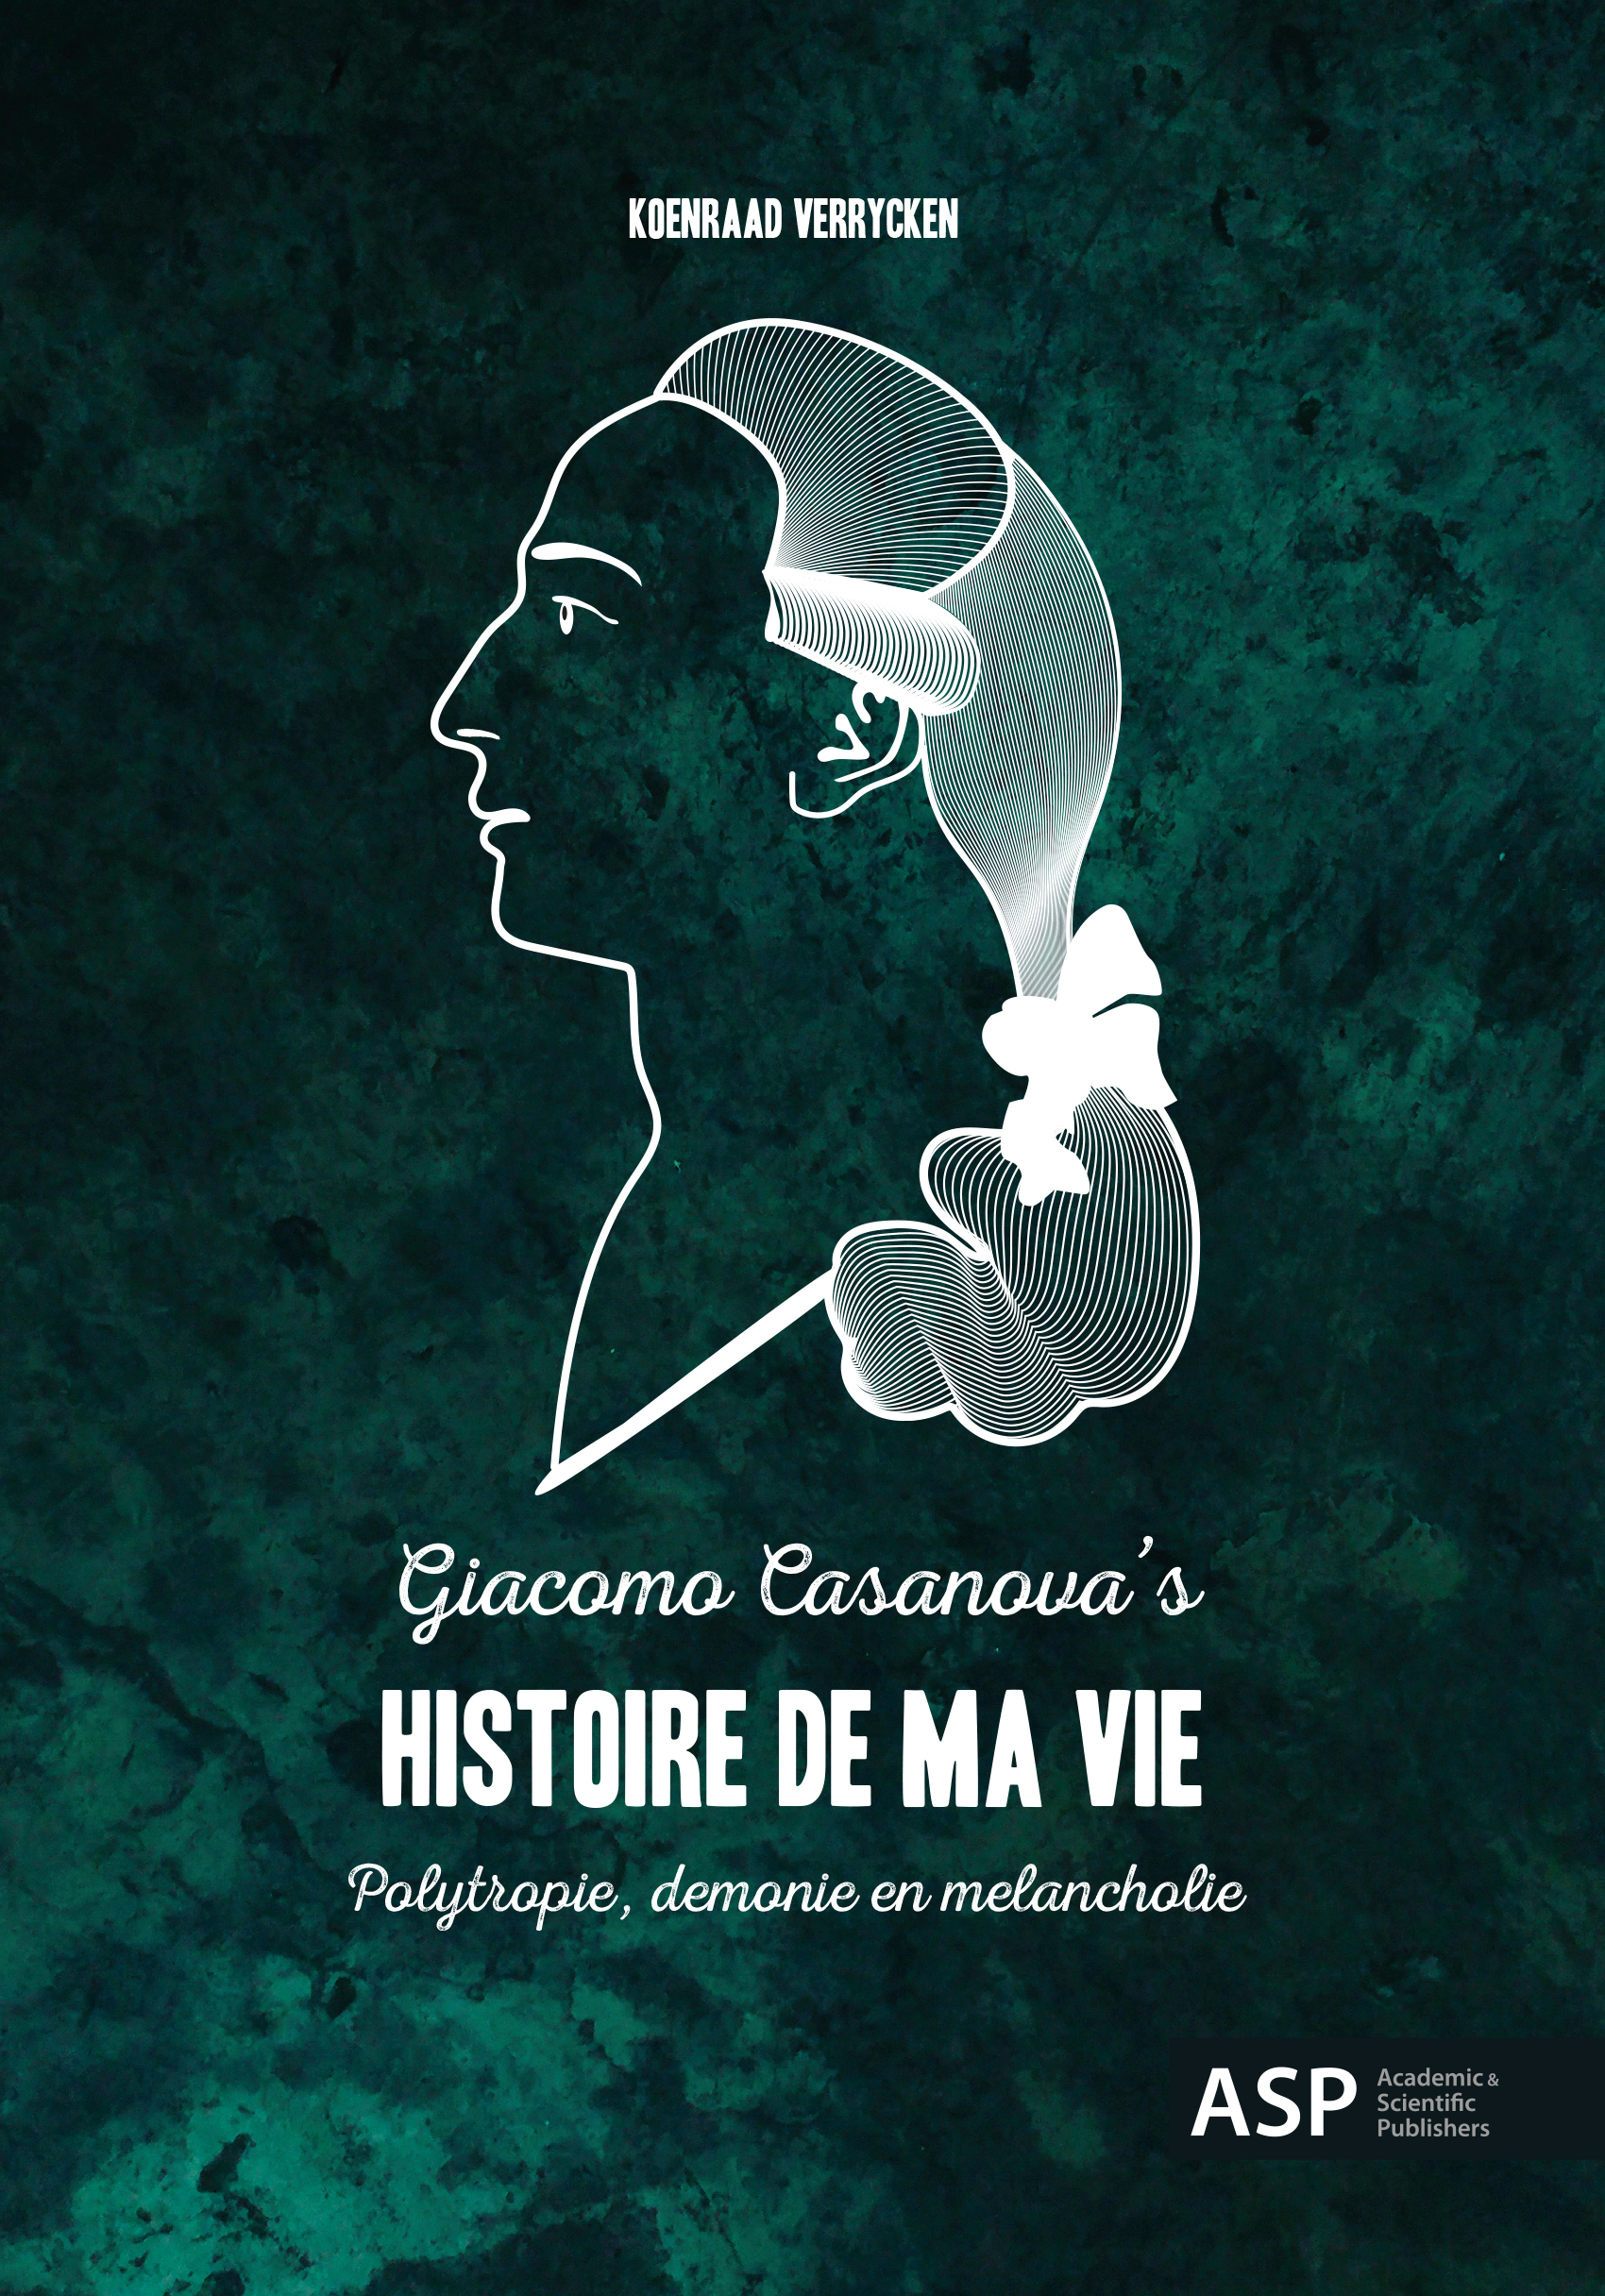 GIACOMO CASANOVA'S HISTOIRE DE MA VIE